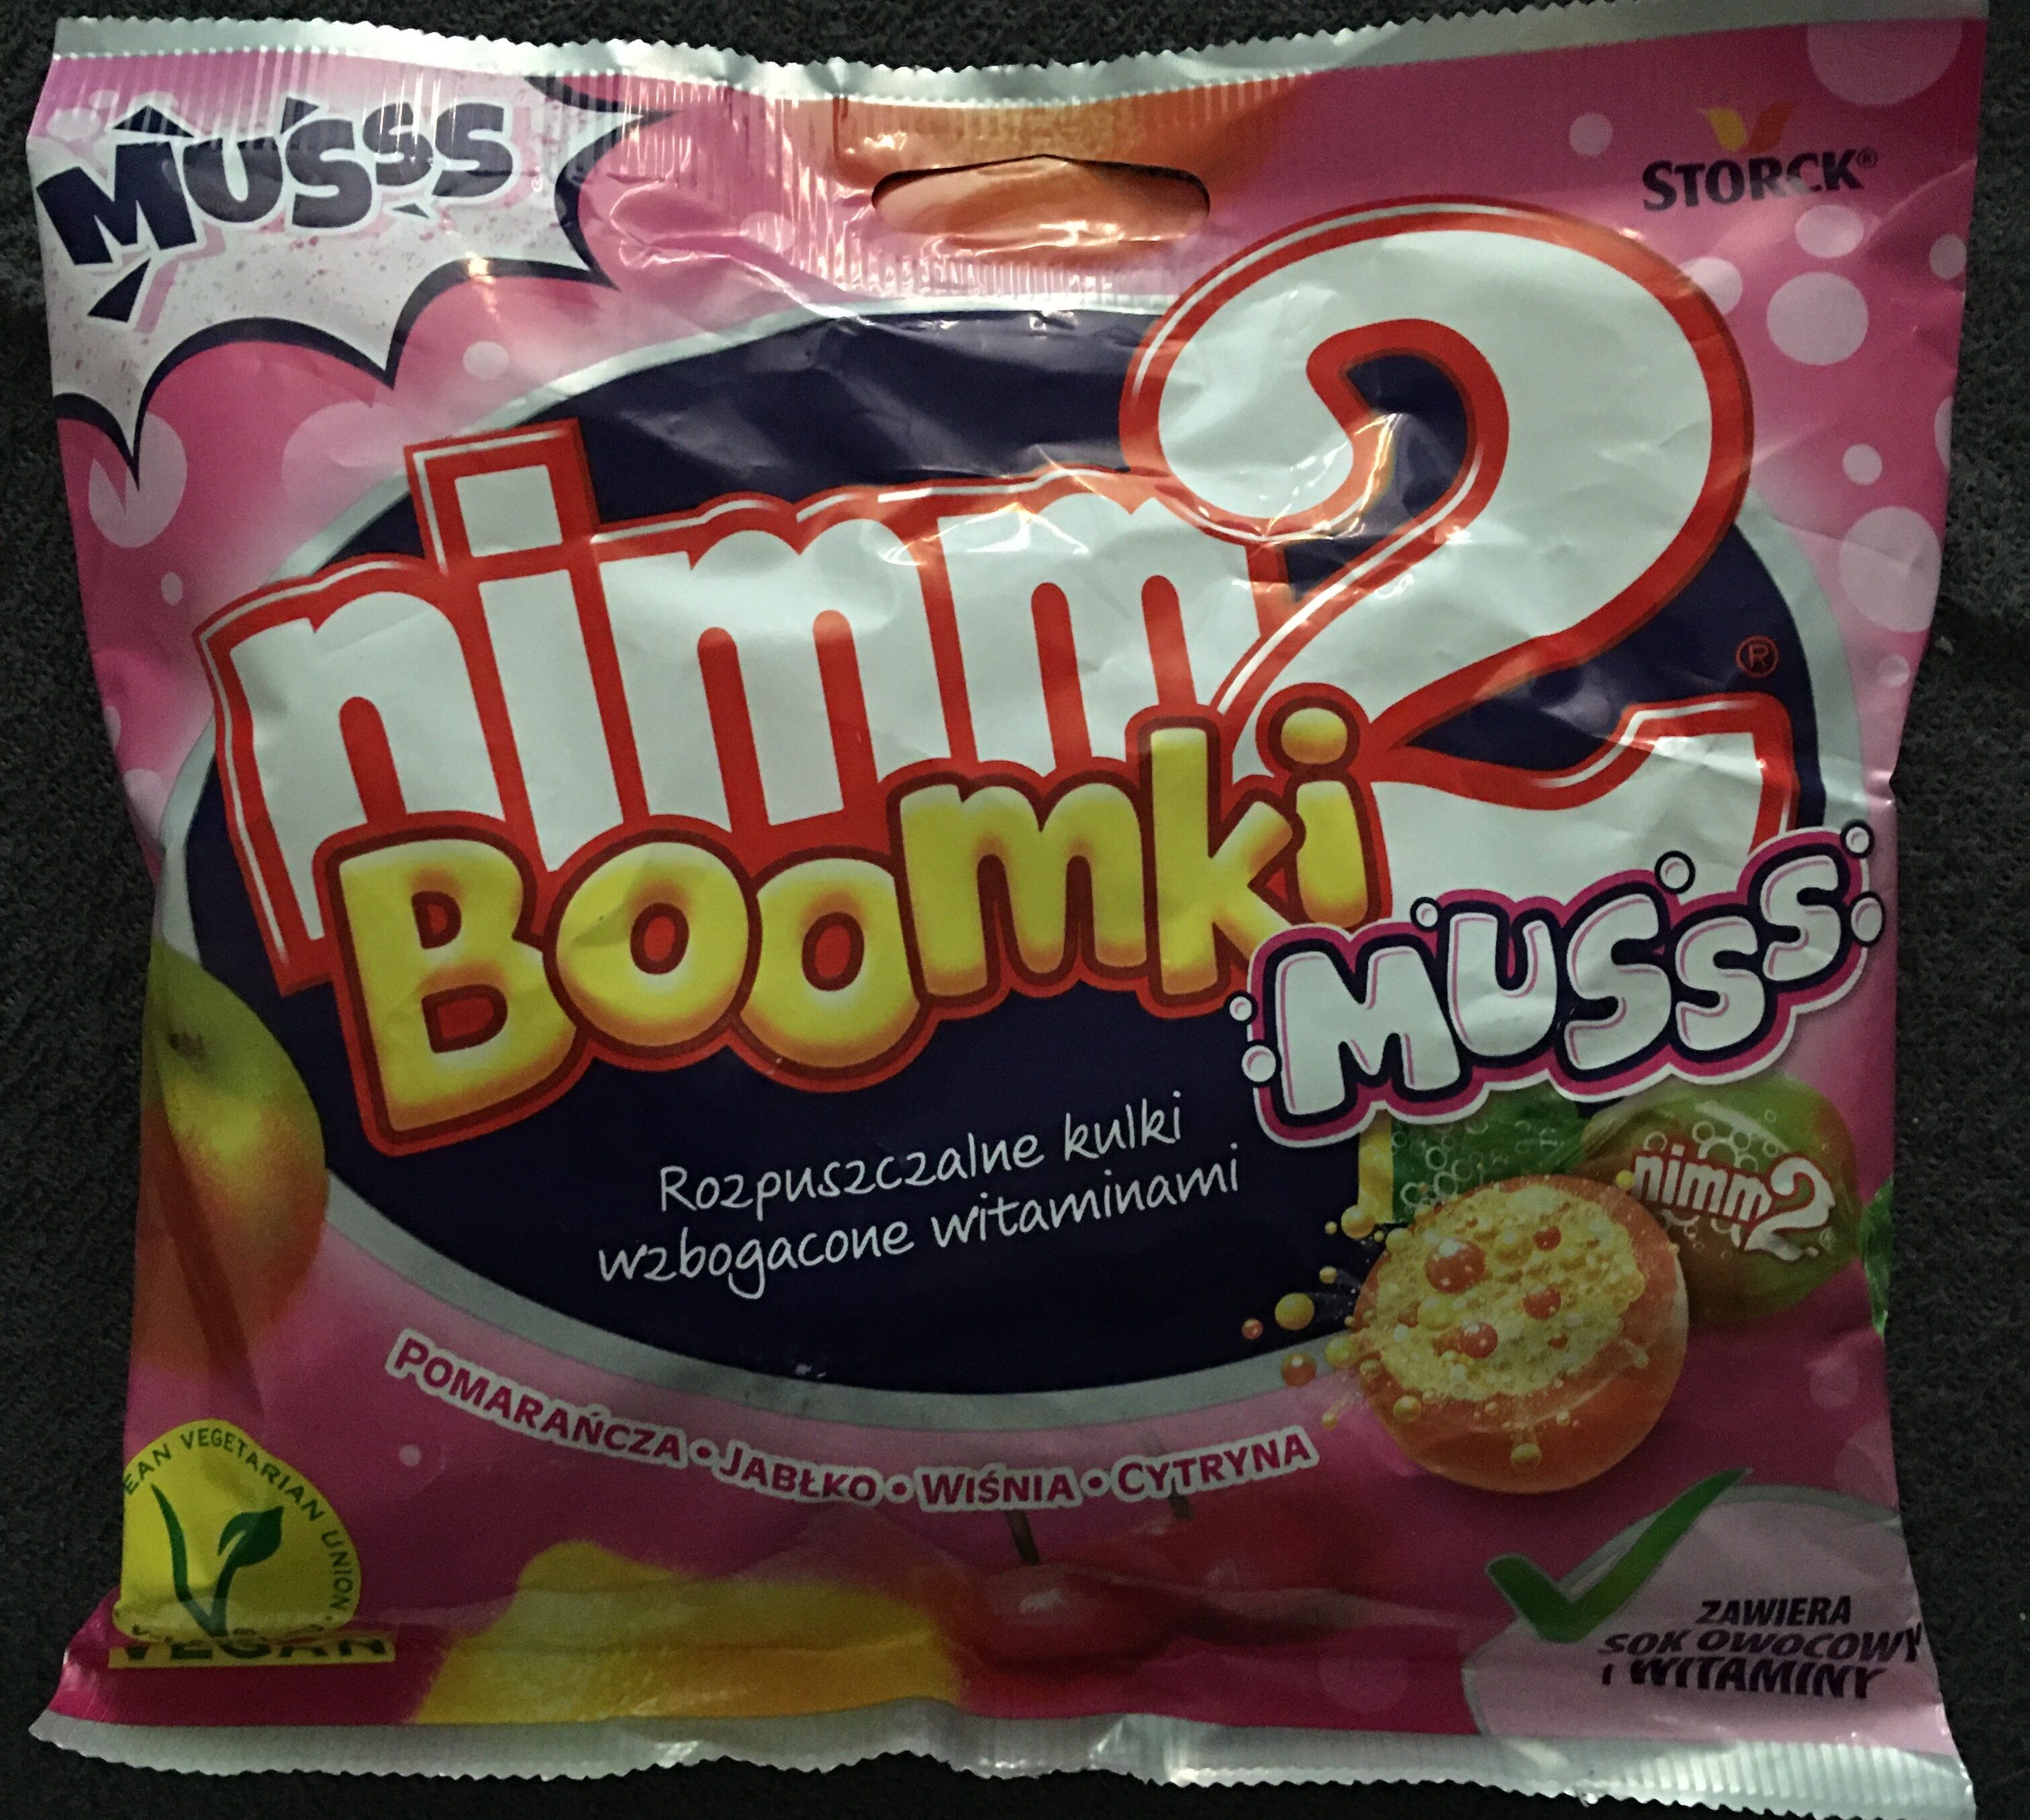 Nimm 2 Boomki musss - pomarańcza, jabłko, wiśnia, cytryna - Prodotto - pl